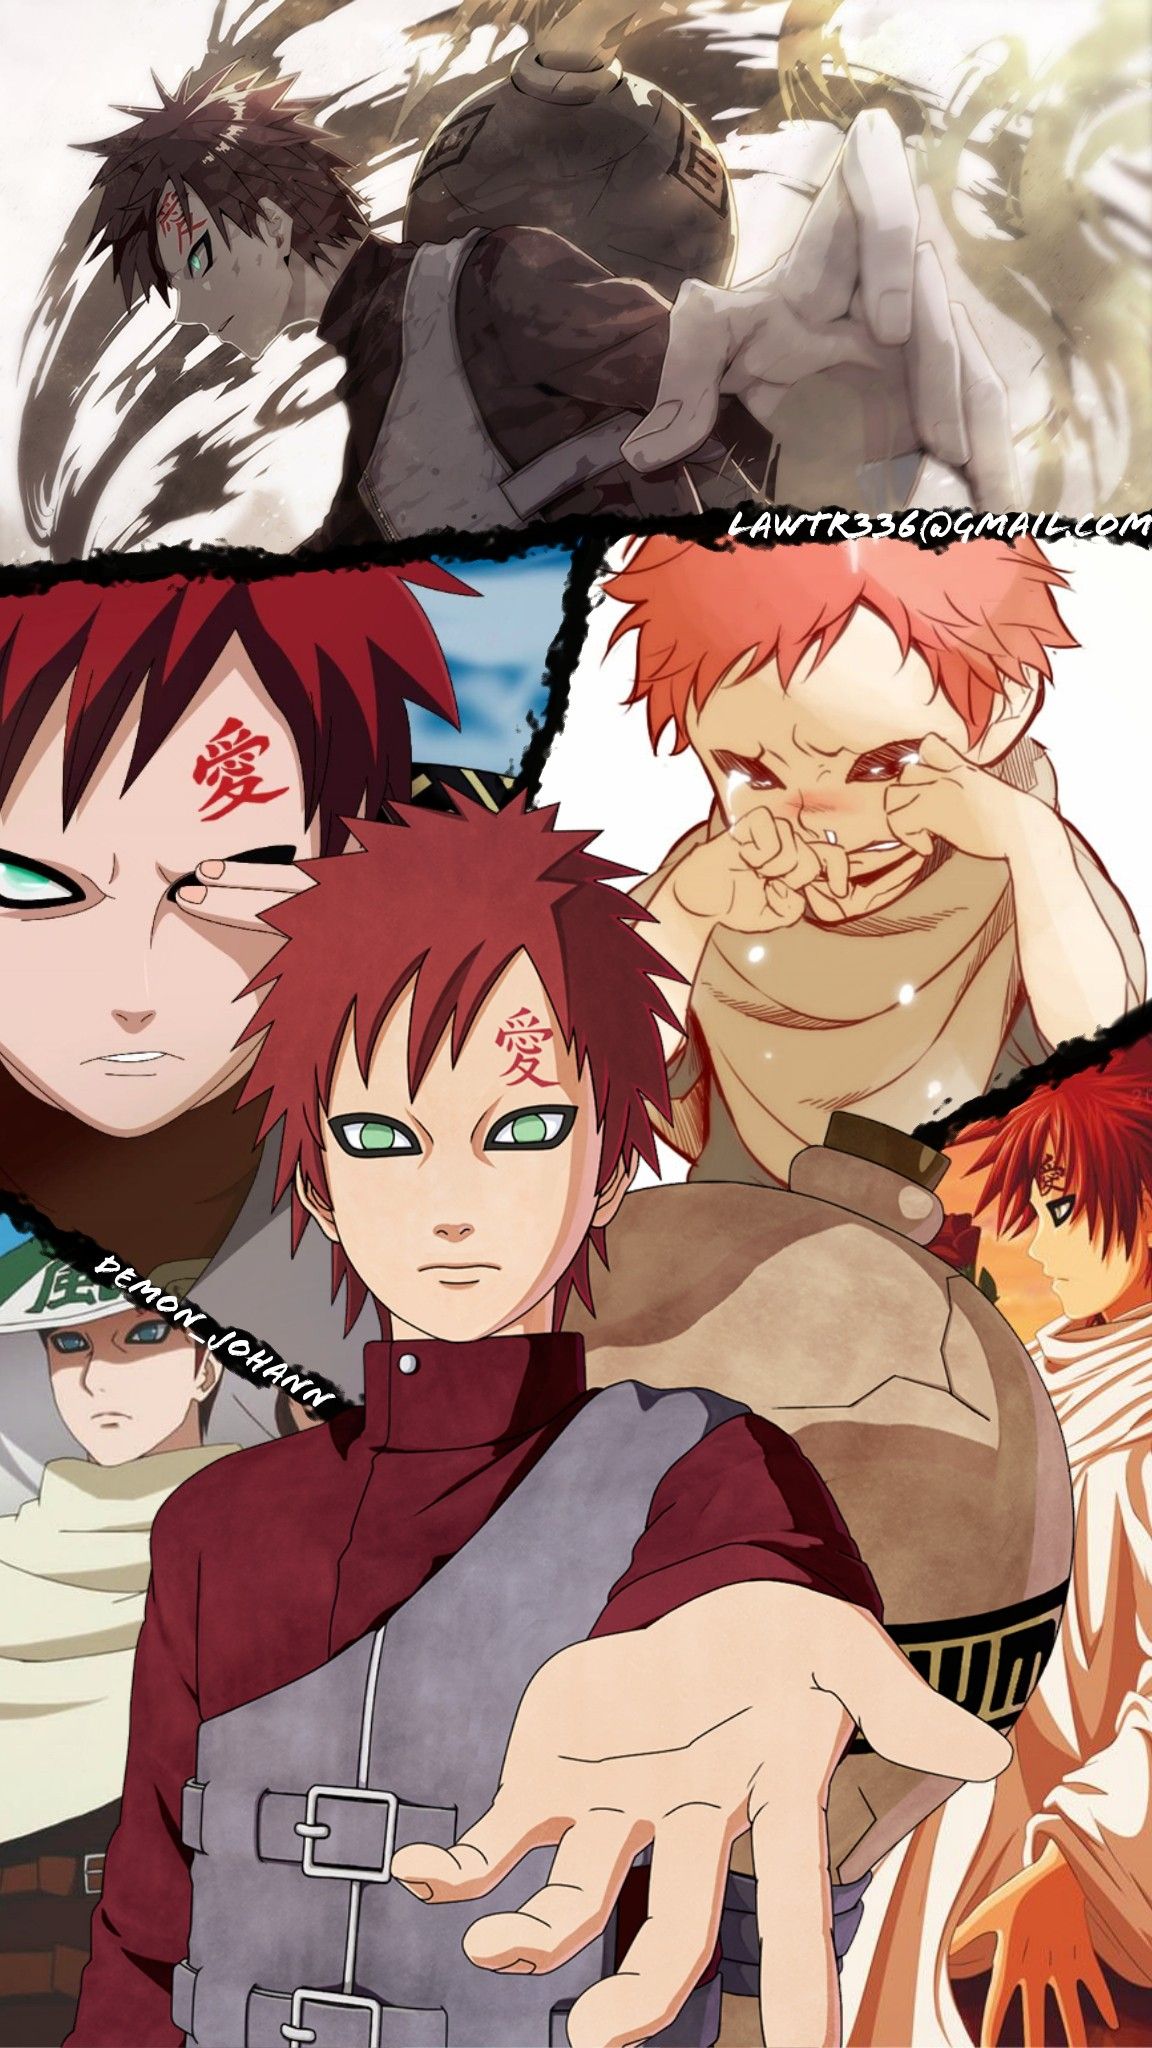 Gaara - Naruto character Wallpaper Download